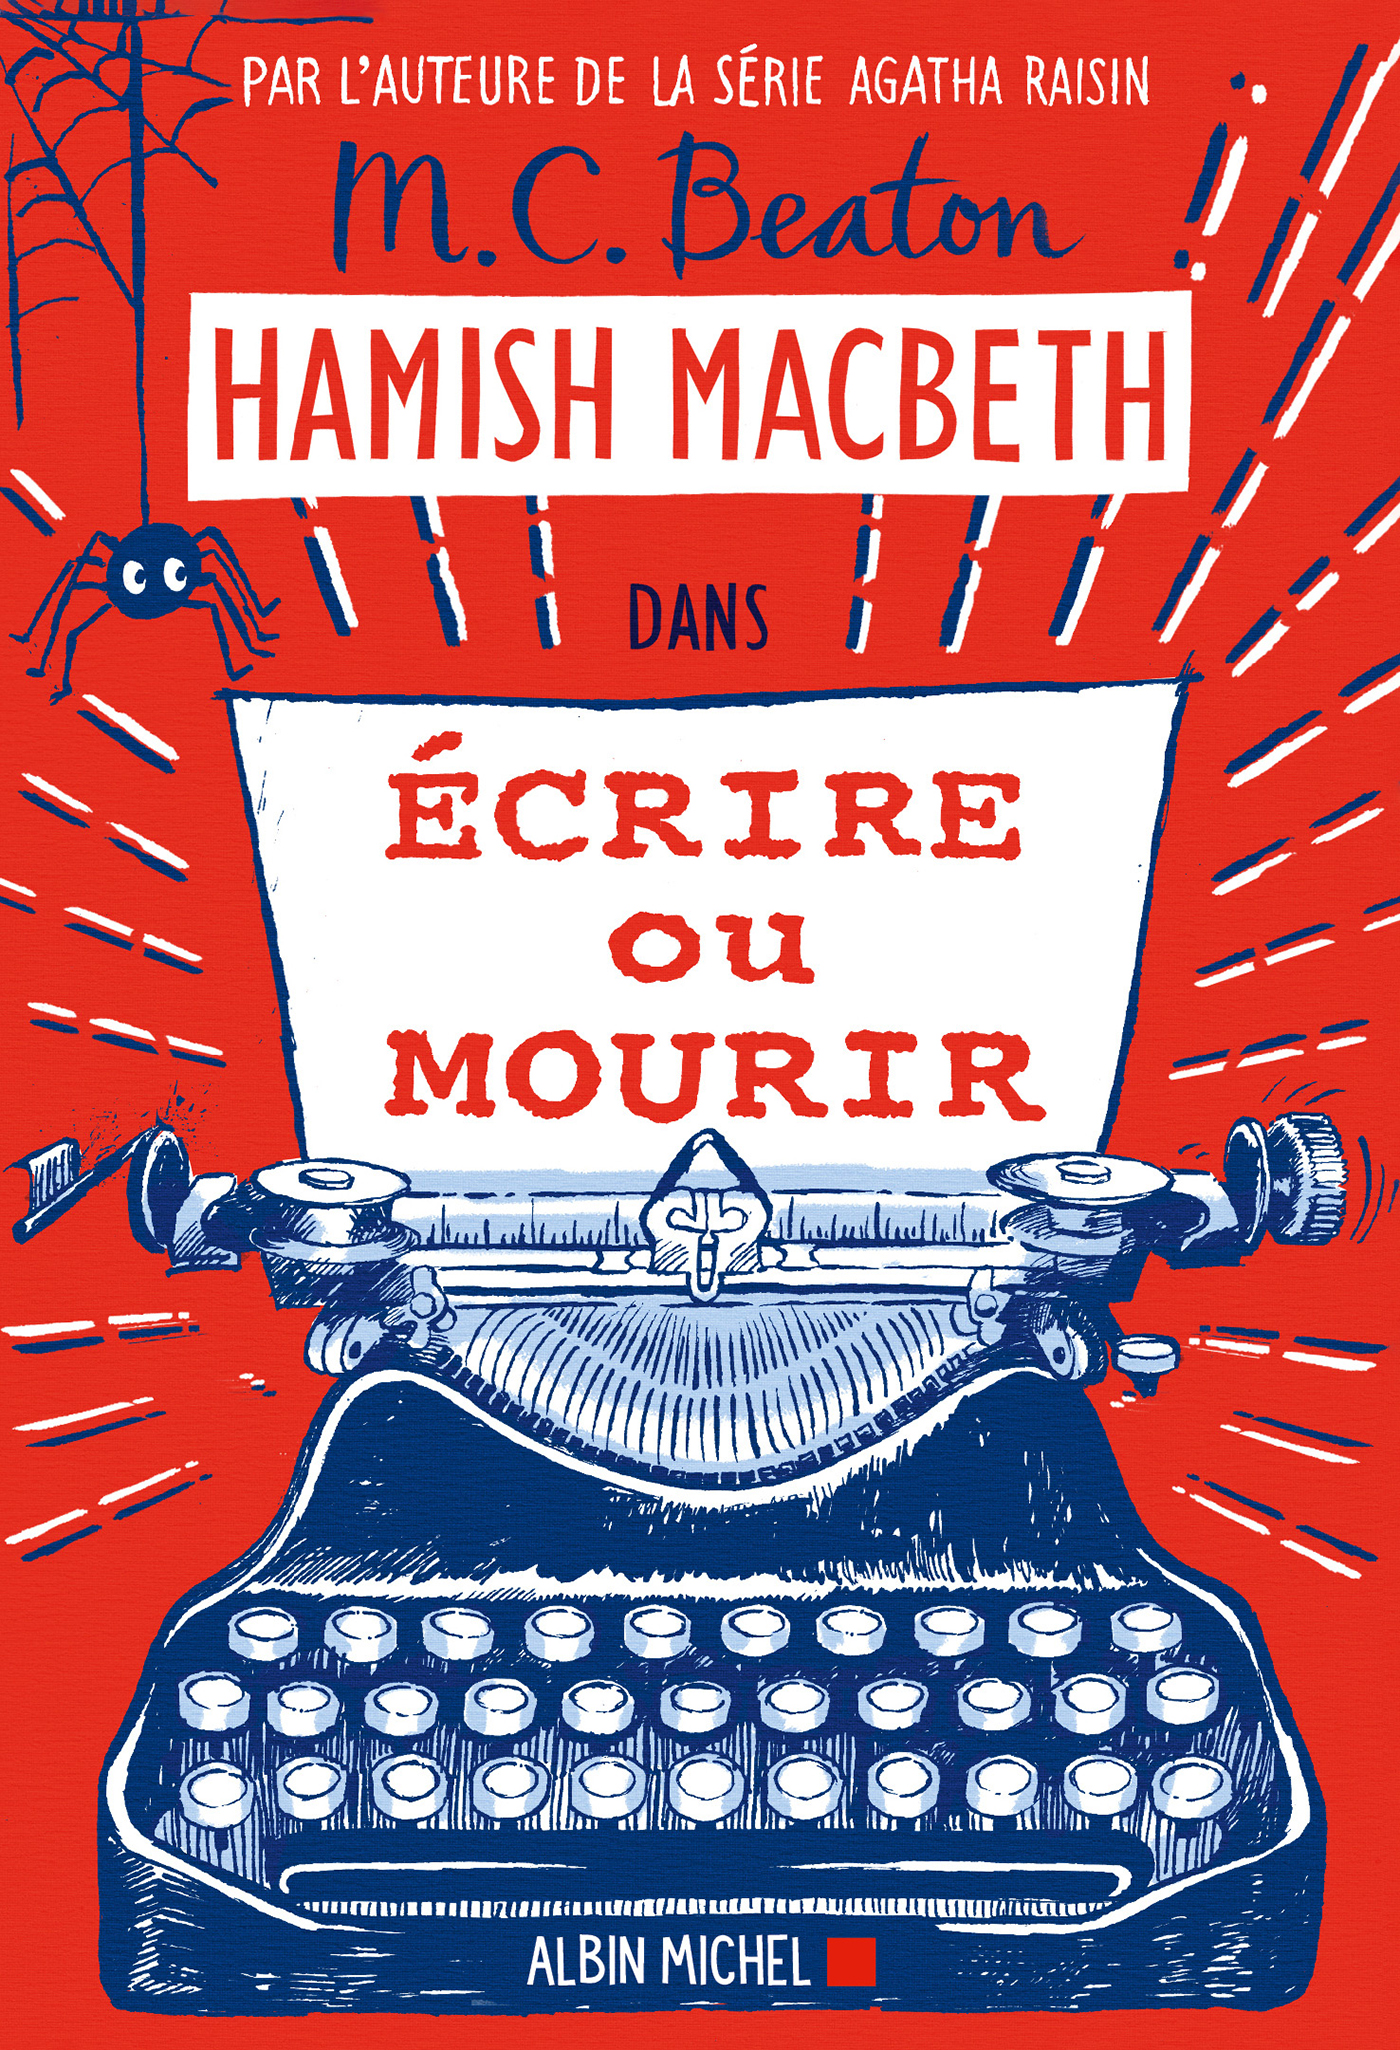 Couverture du livre Hamish Macbeth 20 - Ecrire ou mourir